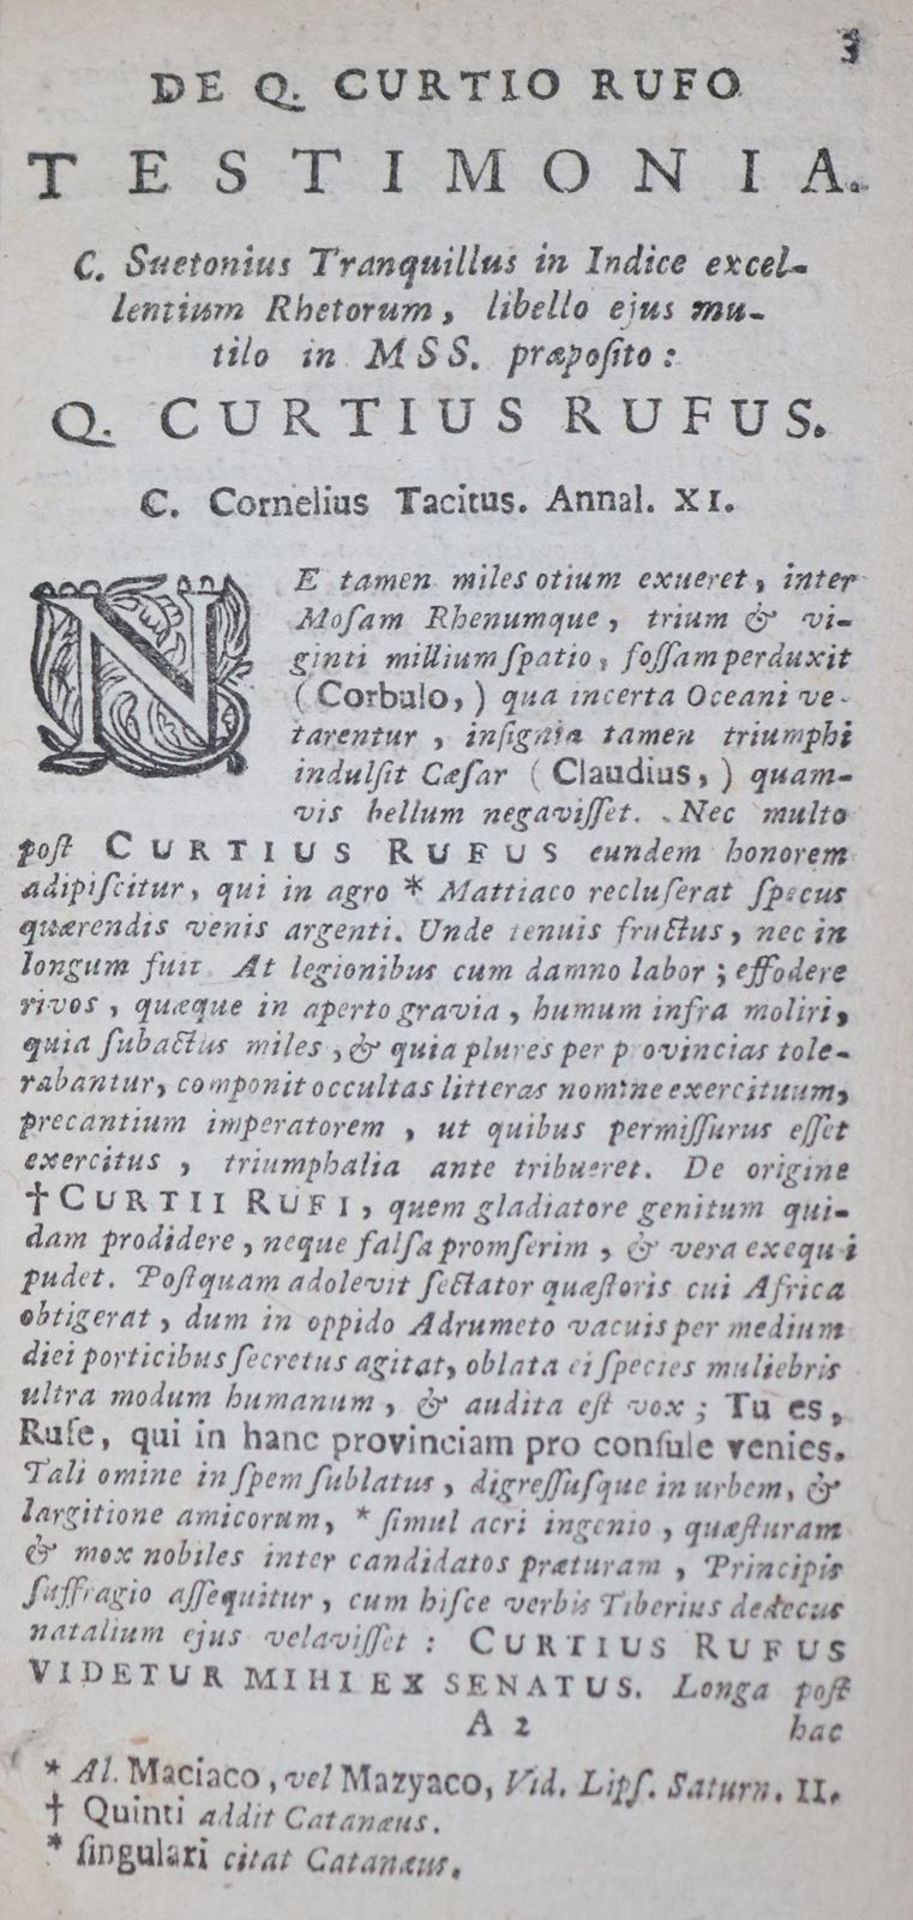 Curtius Rufus,Q.